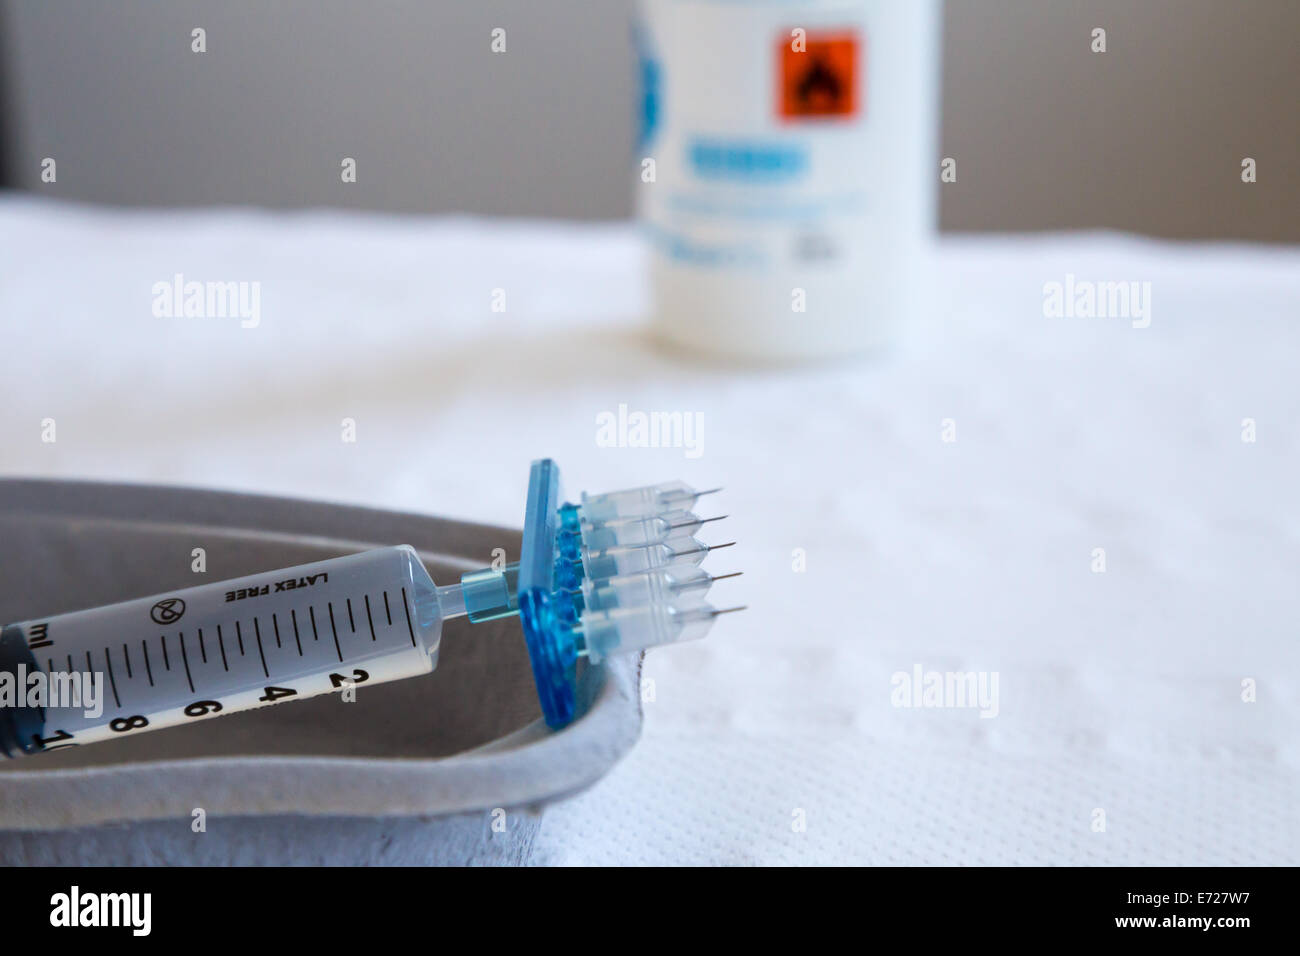 eine typische Spritze für Mesotherapie mit fünf Mikro-Nadeln einsatzbereit  Stockfotografie - Alamy